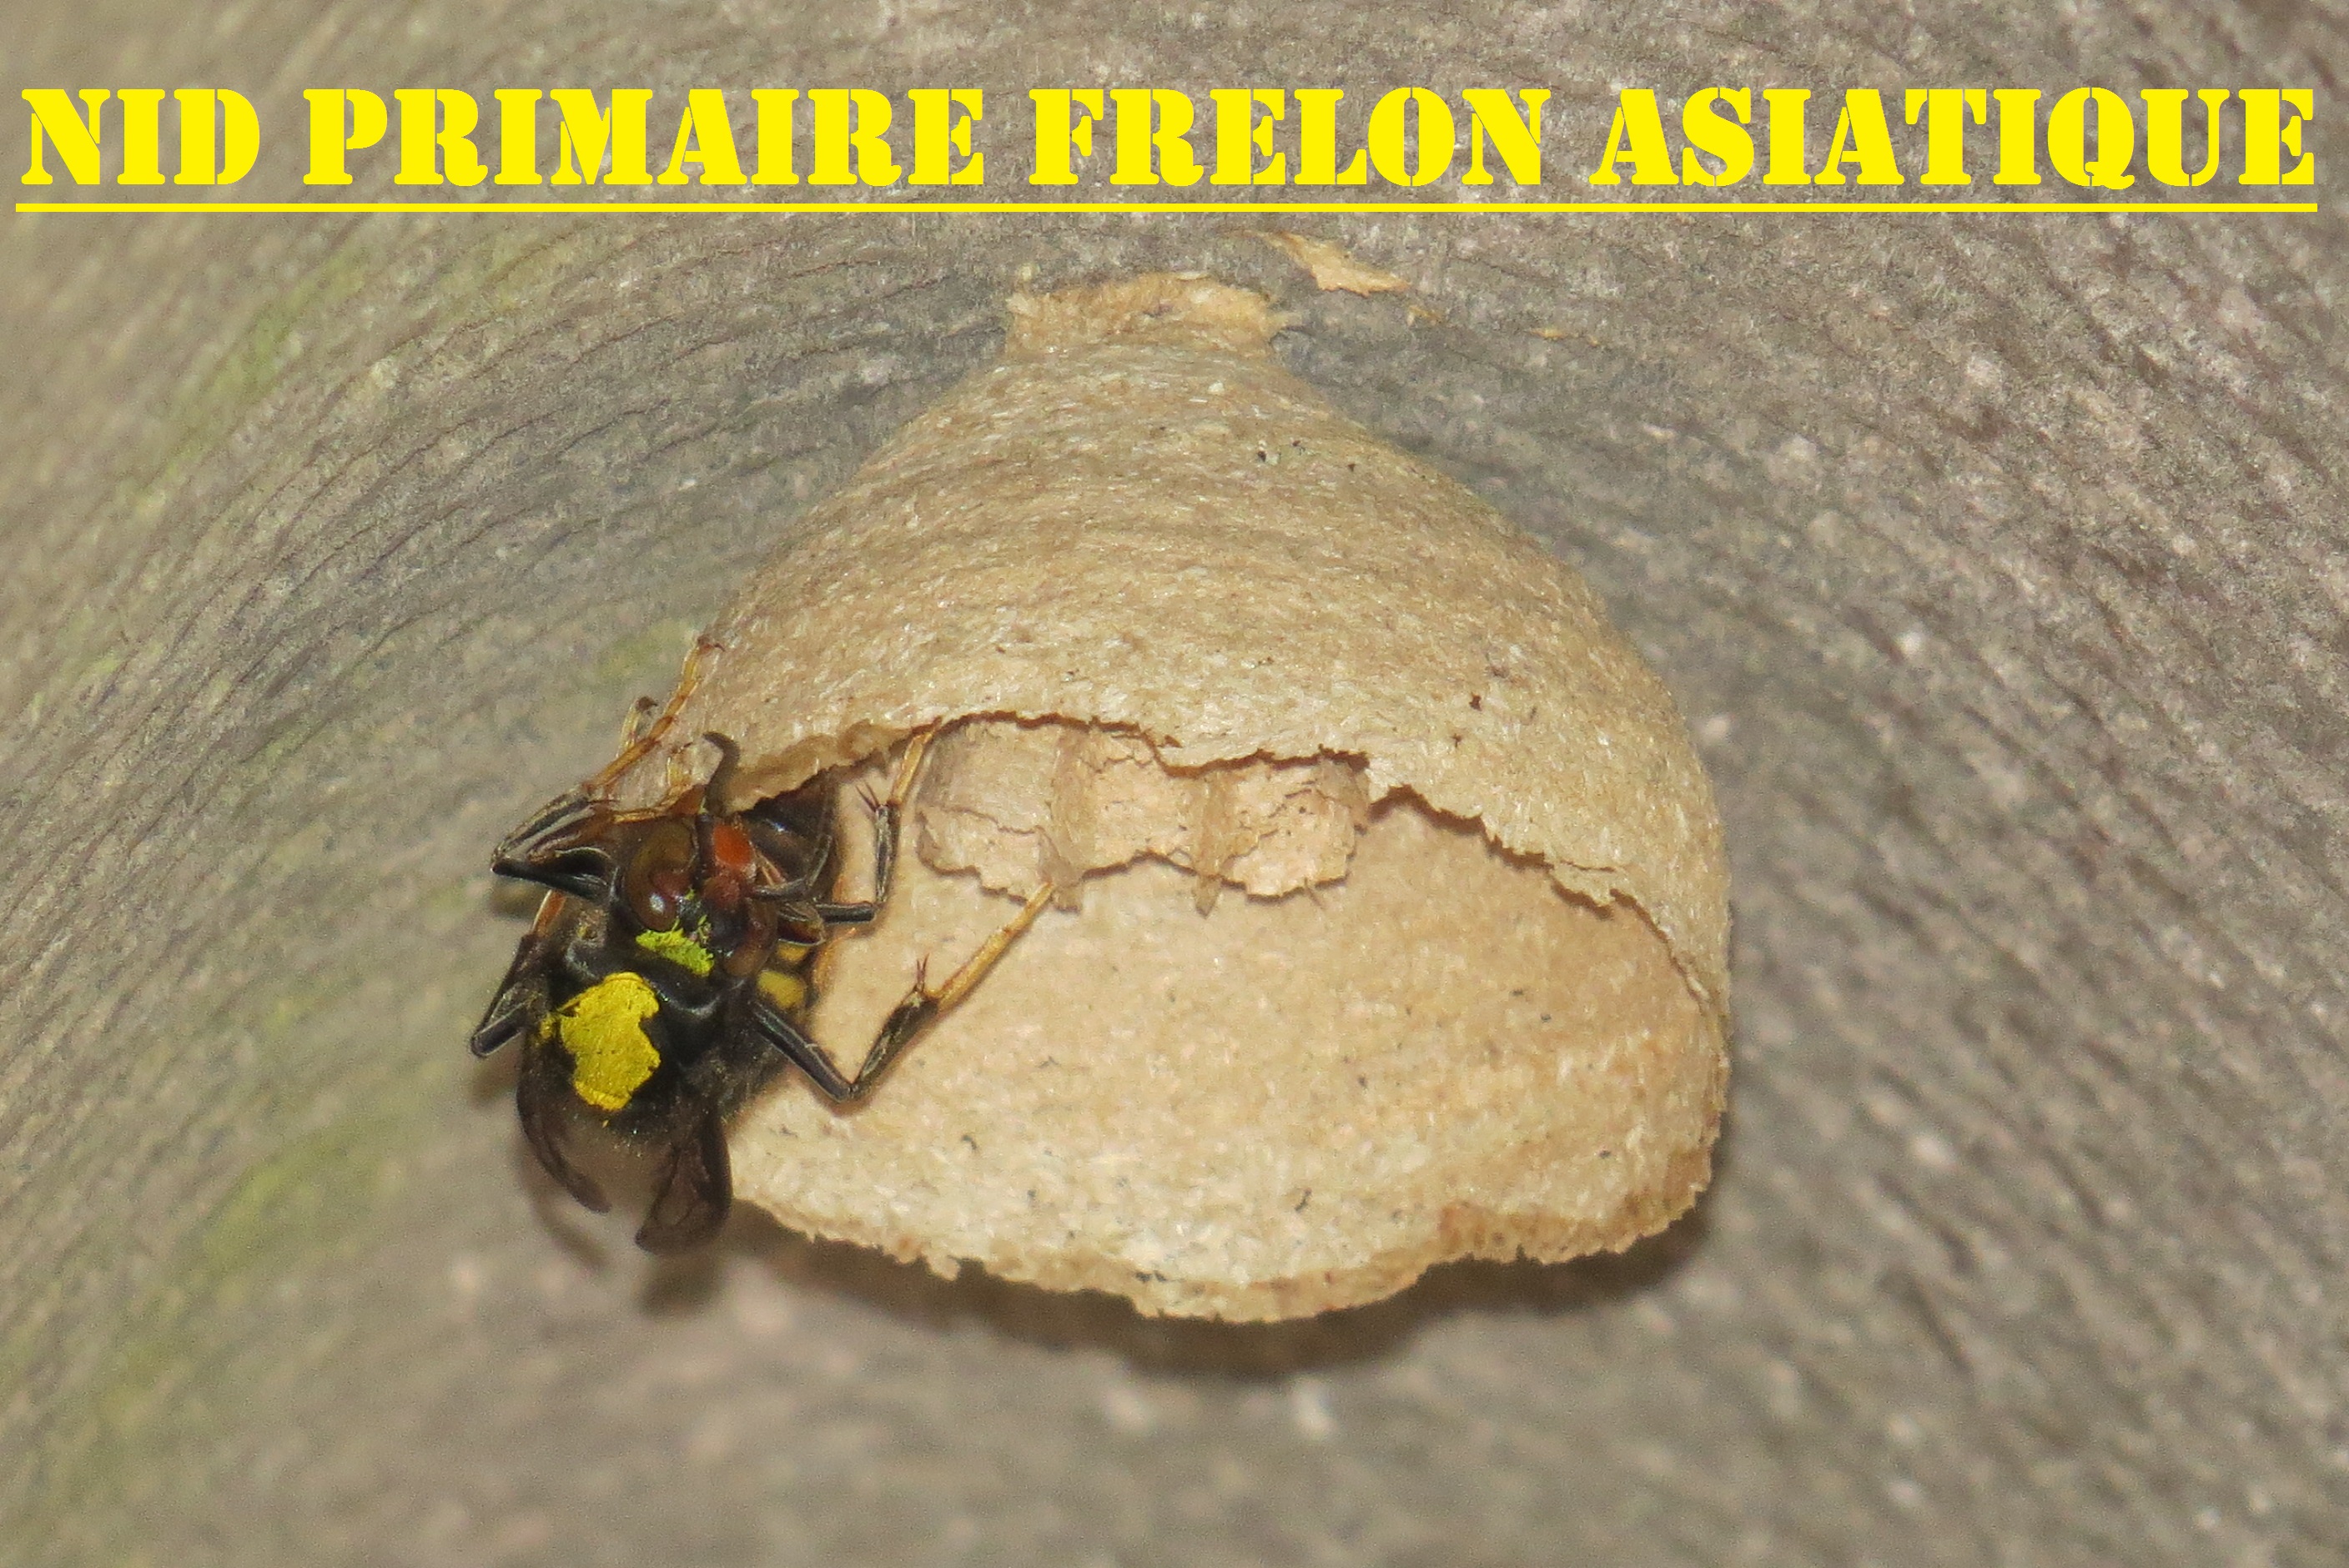 nid primaire frelon asiatique